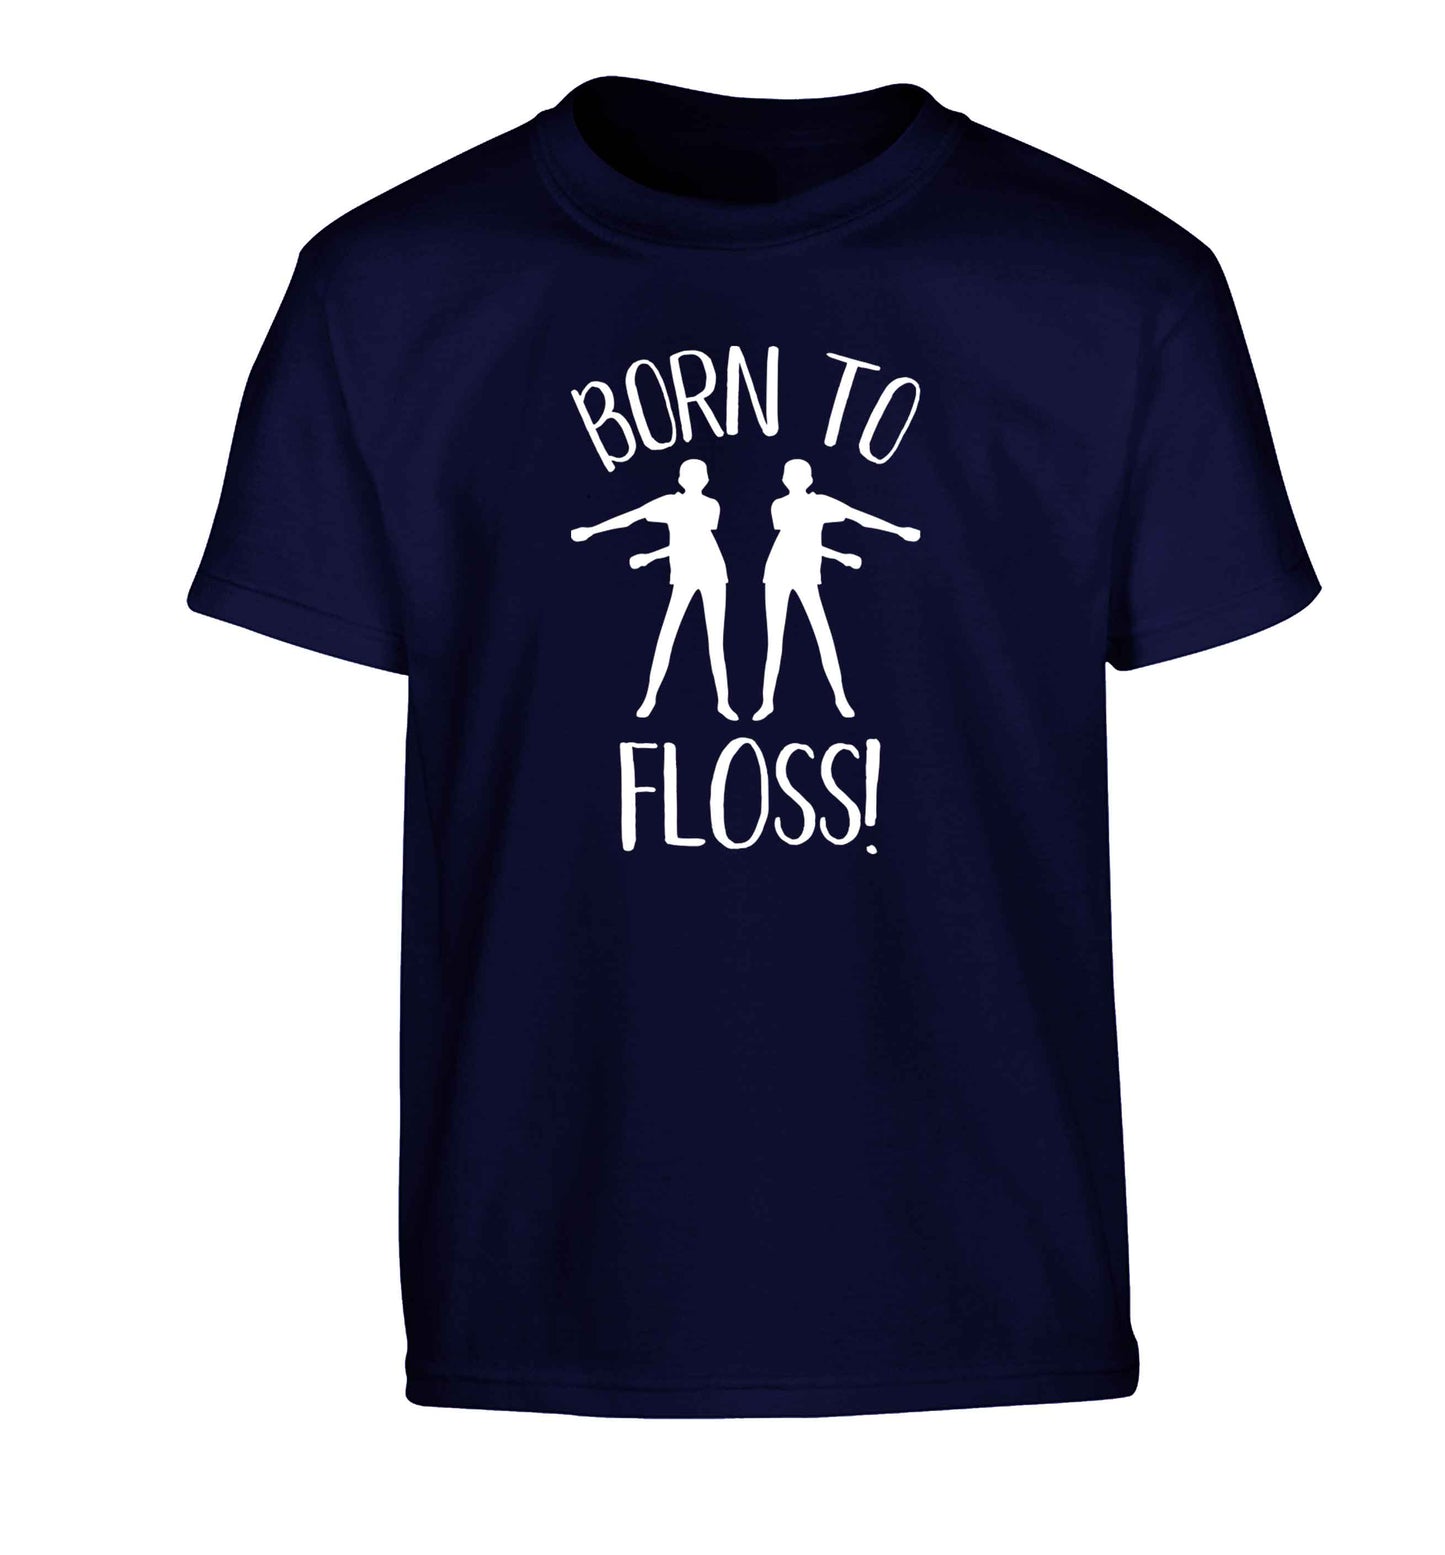 Born to floss Children's navy Tshirt 12-13 Years